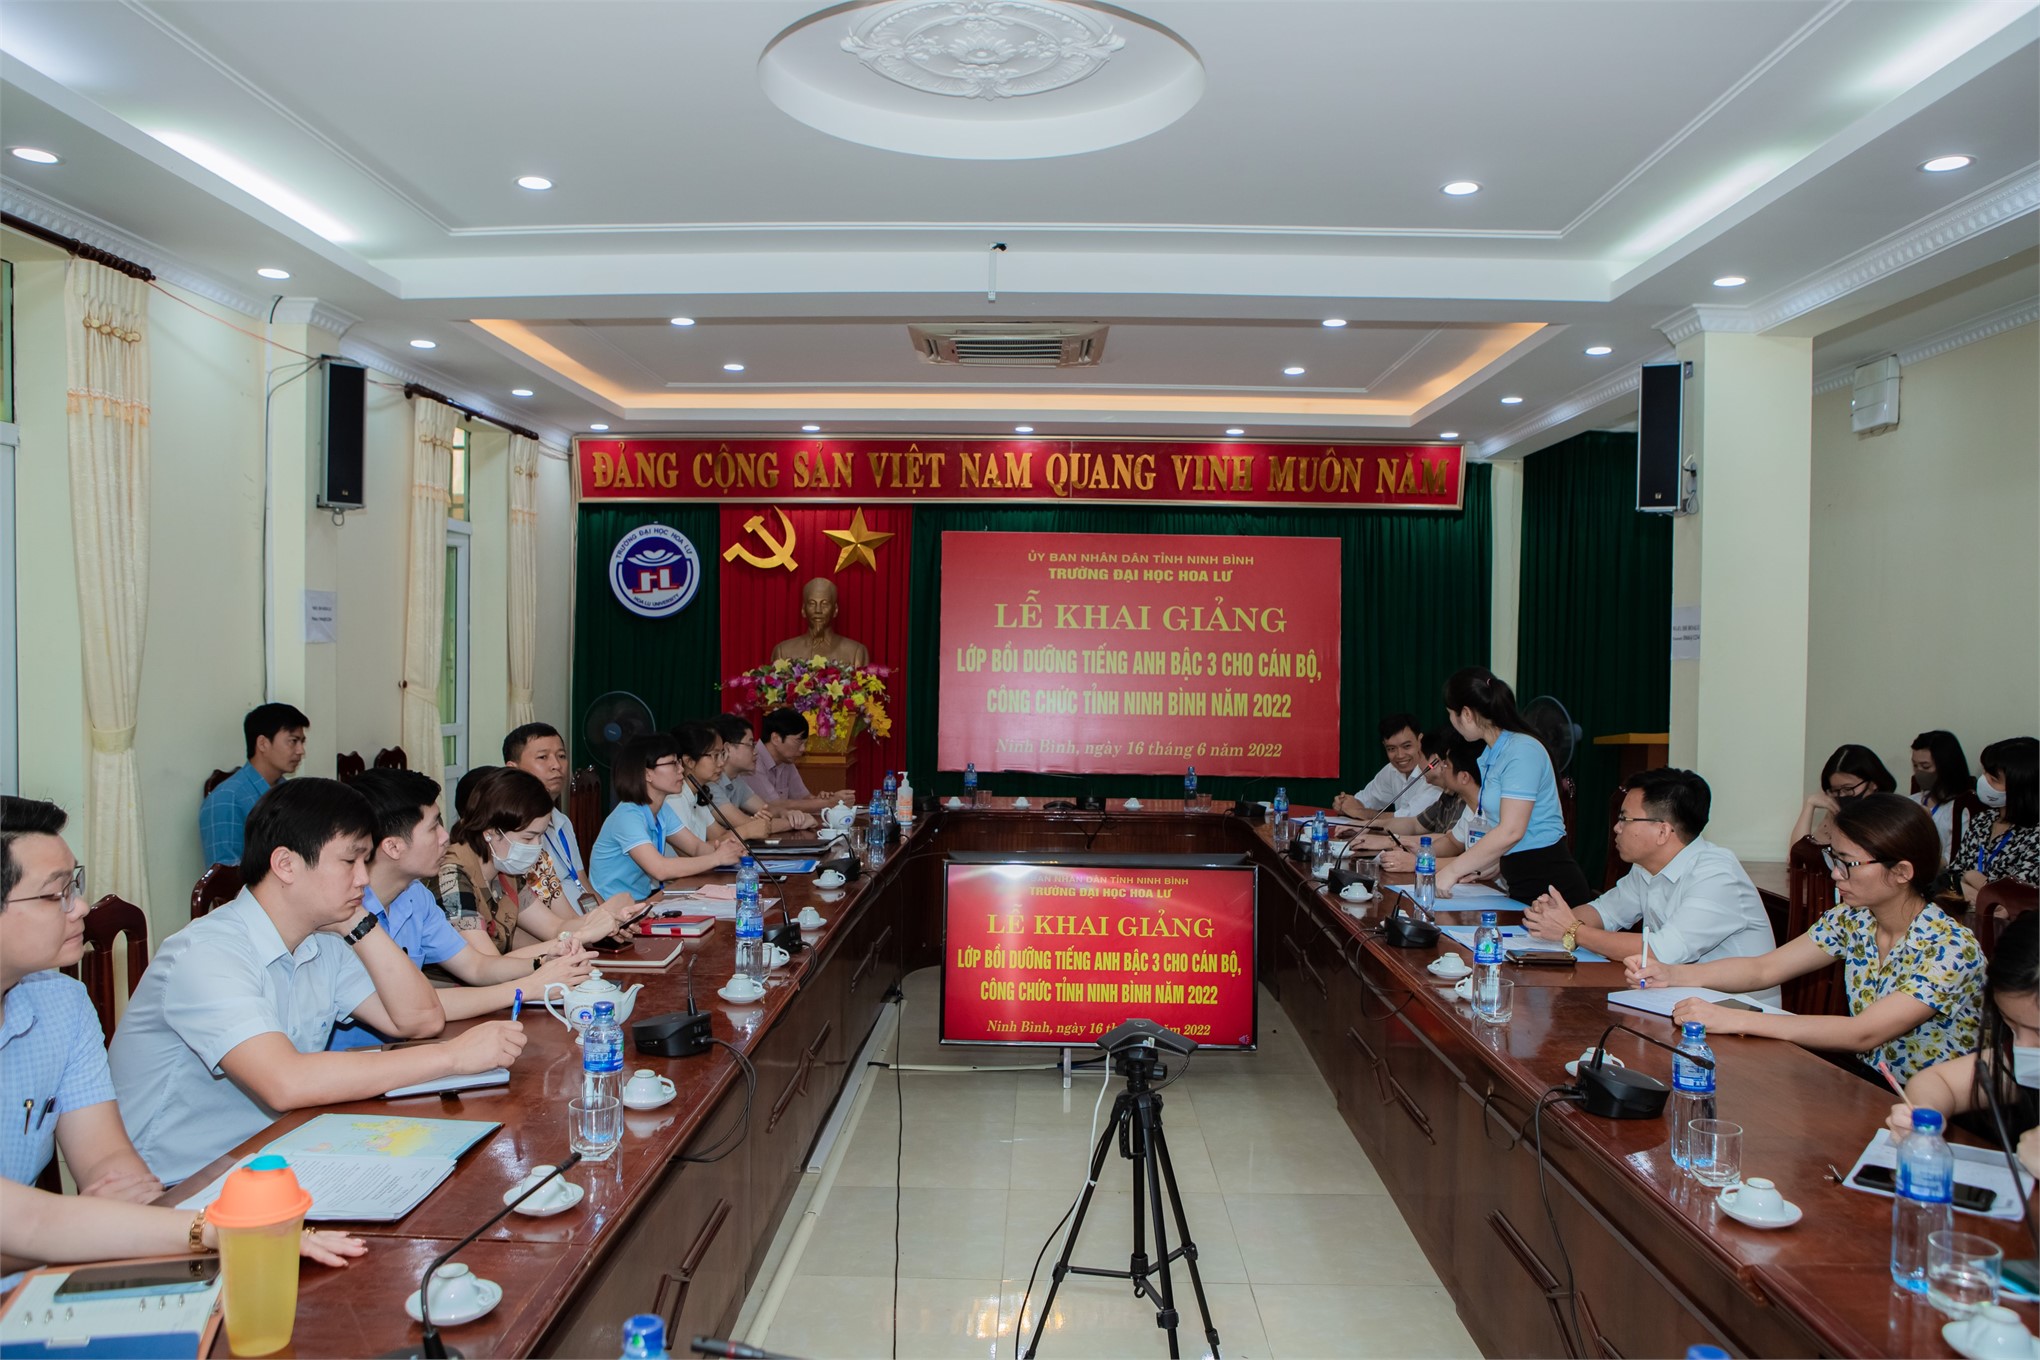 Lễ khai giảng lớp bồi dưỡng Tiếng Anh bậc 3 cho cán bộ, công chức tỉnh Ninh Bình năm 2022